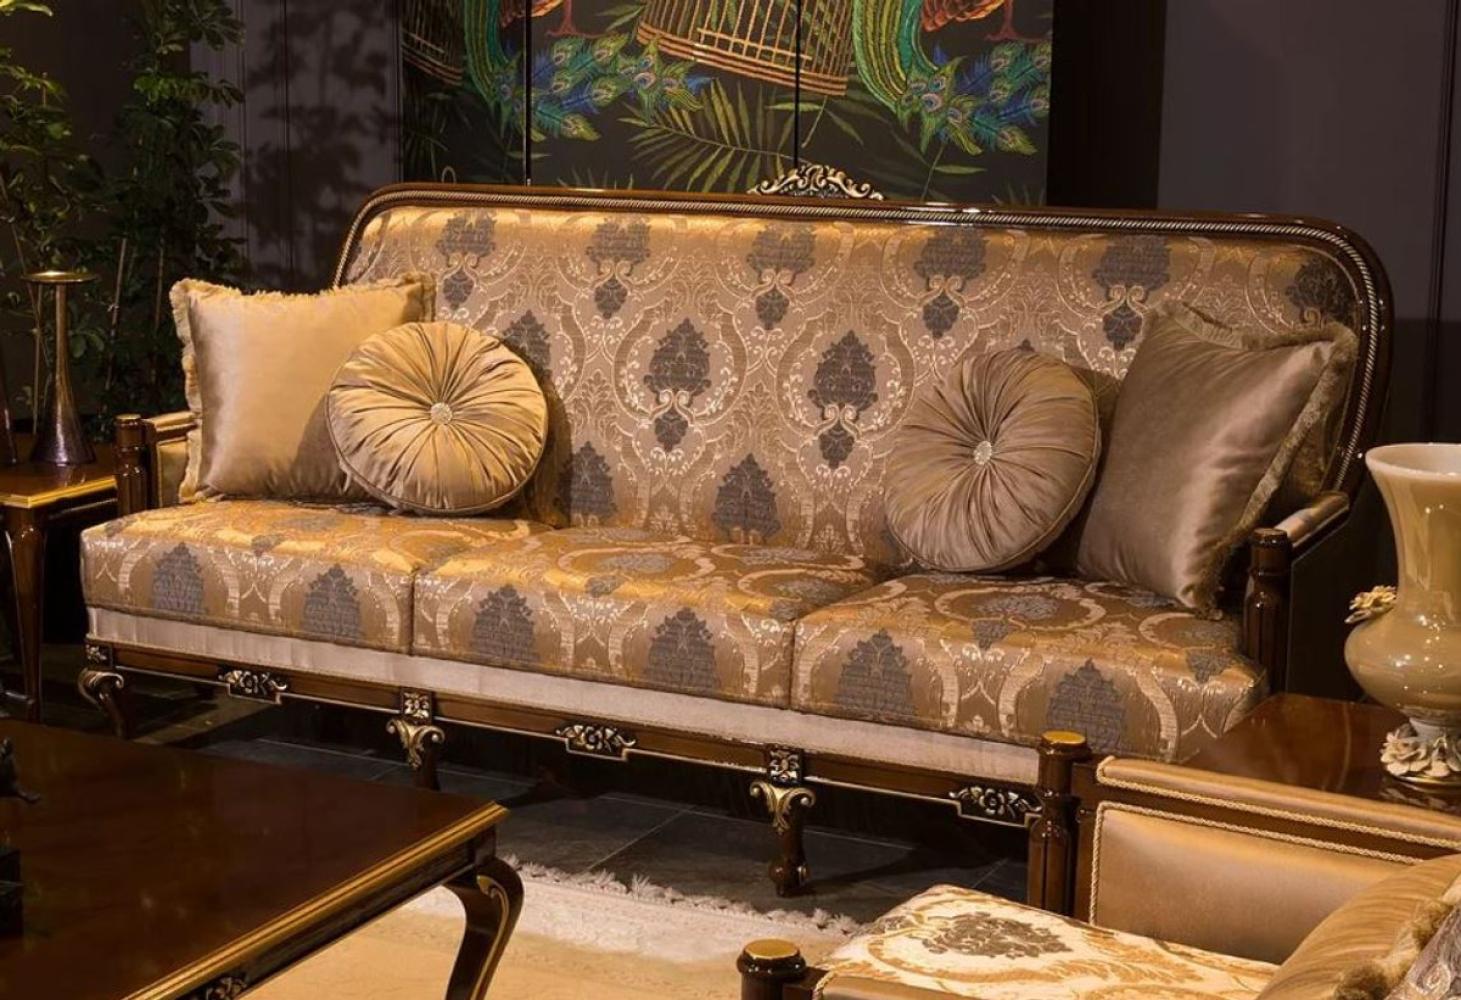 Casa Padrino Luxus Barock Sofa Grau / Braun / Gold 221 x 80 x H. 110 cm - Wohnzimmer Sofa mit elegantem Muster und dekorativen Kissen - Edle Wohnzimmer Möbel im Barockstil Bild 1